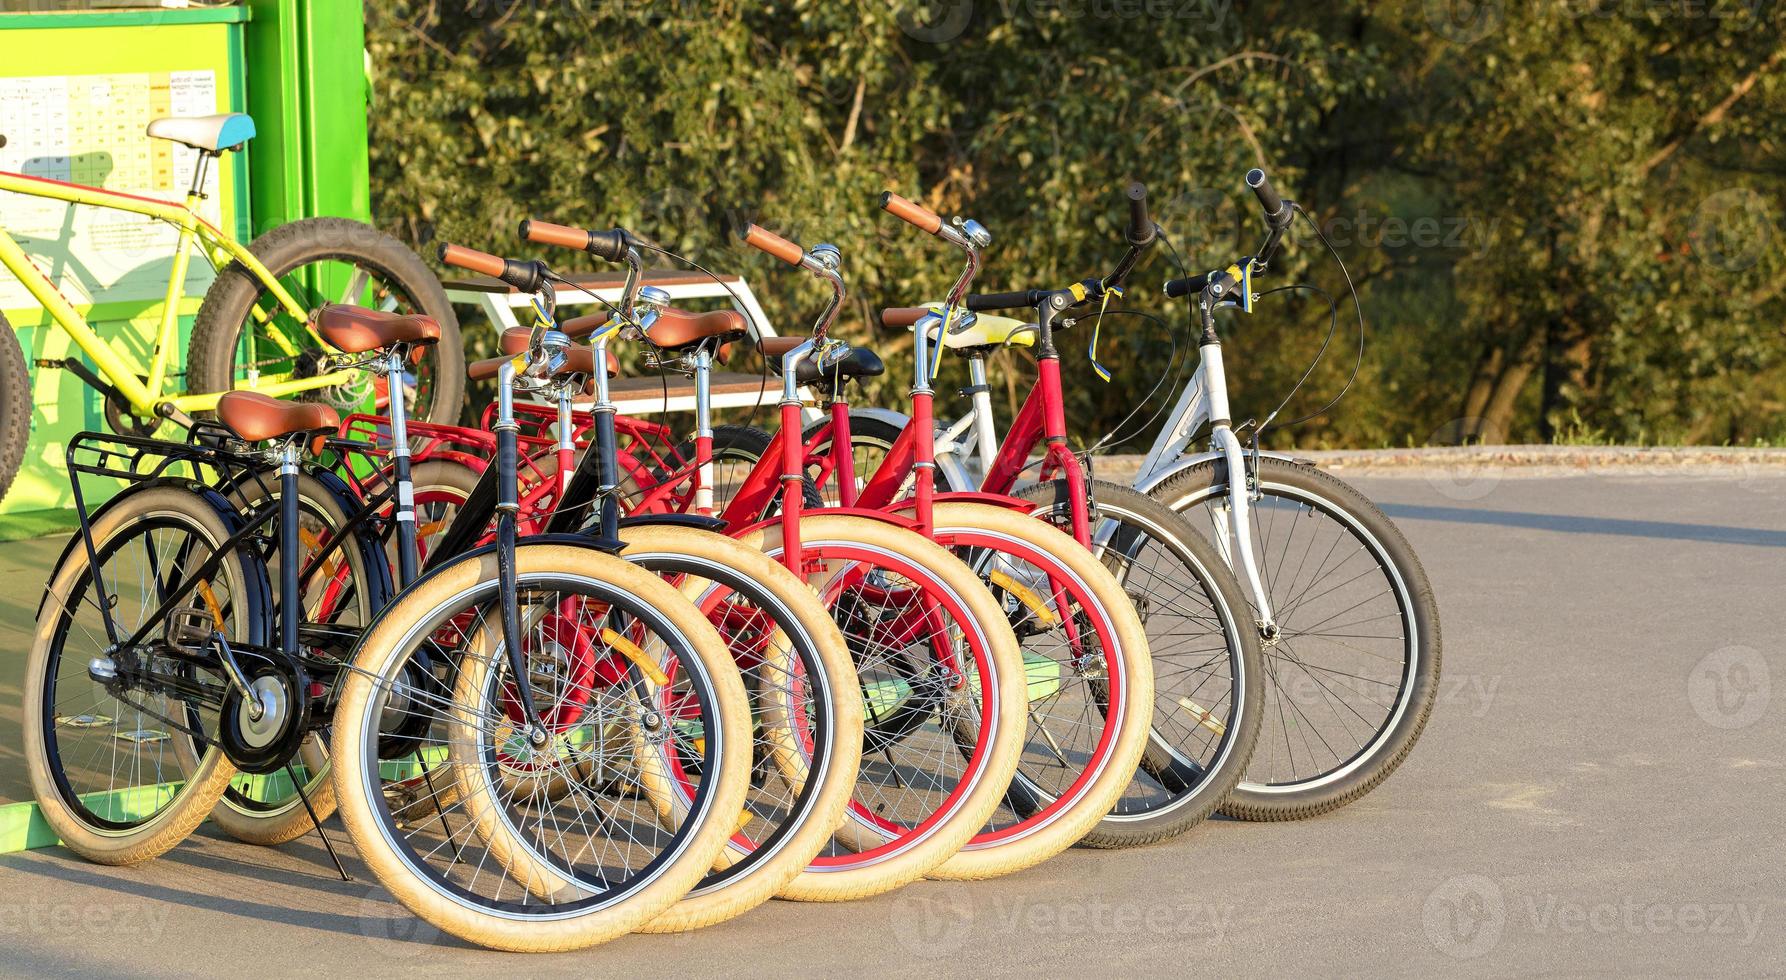 gruppo di biciclette colorate parcheggiate insieme in un primo piano del parcheggio foto